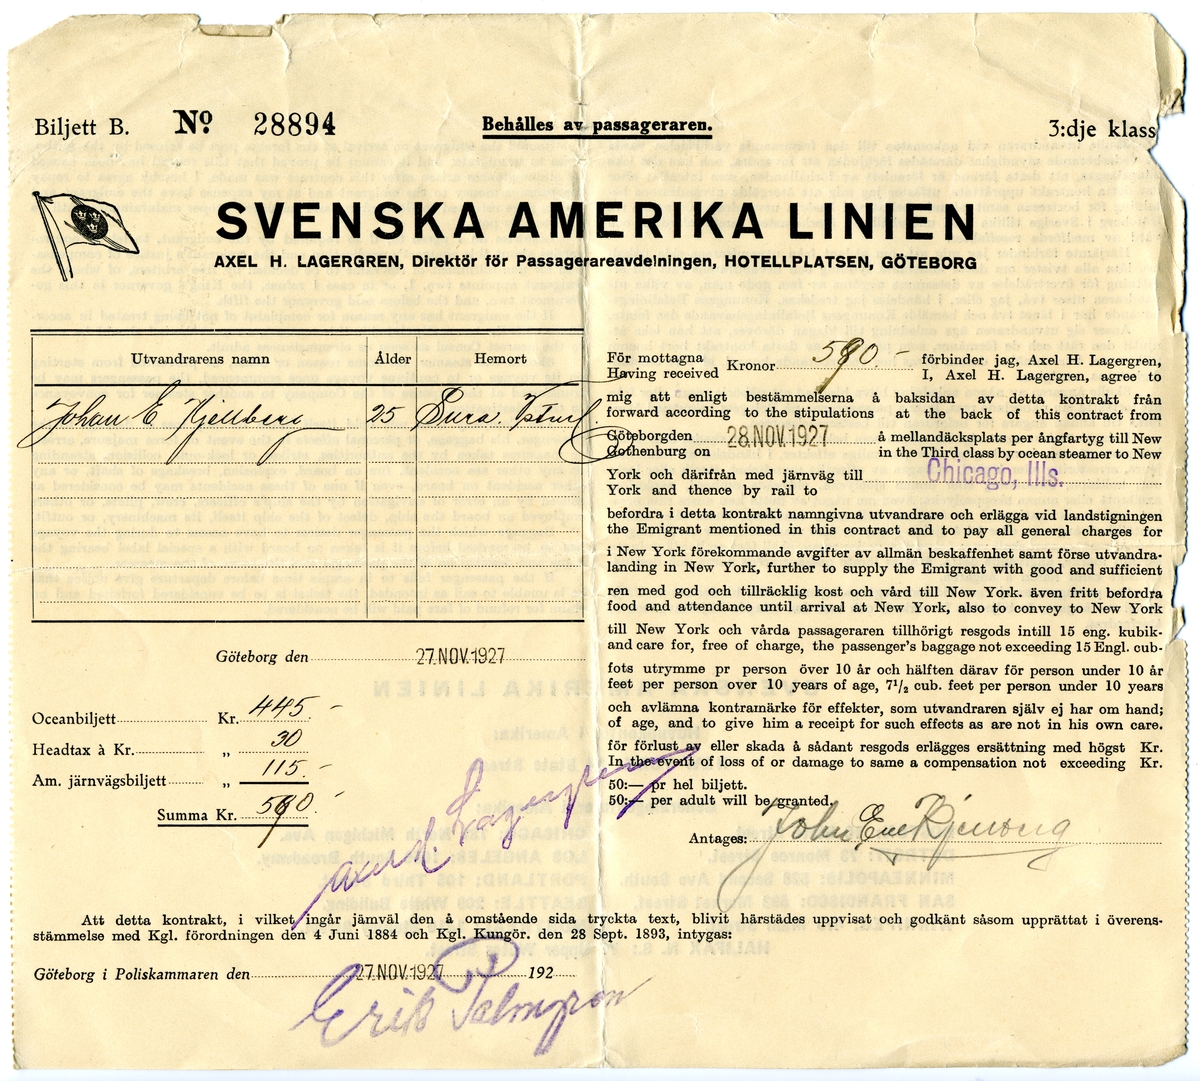 Biljett till Svenska Amerika linien